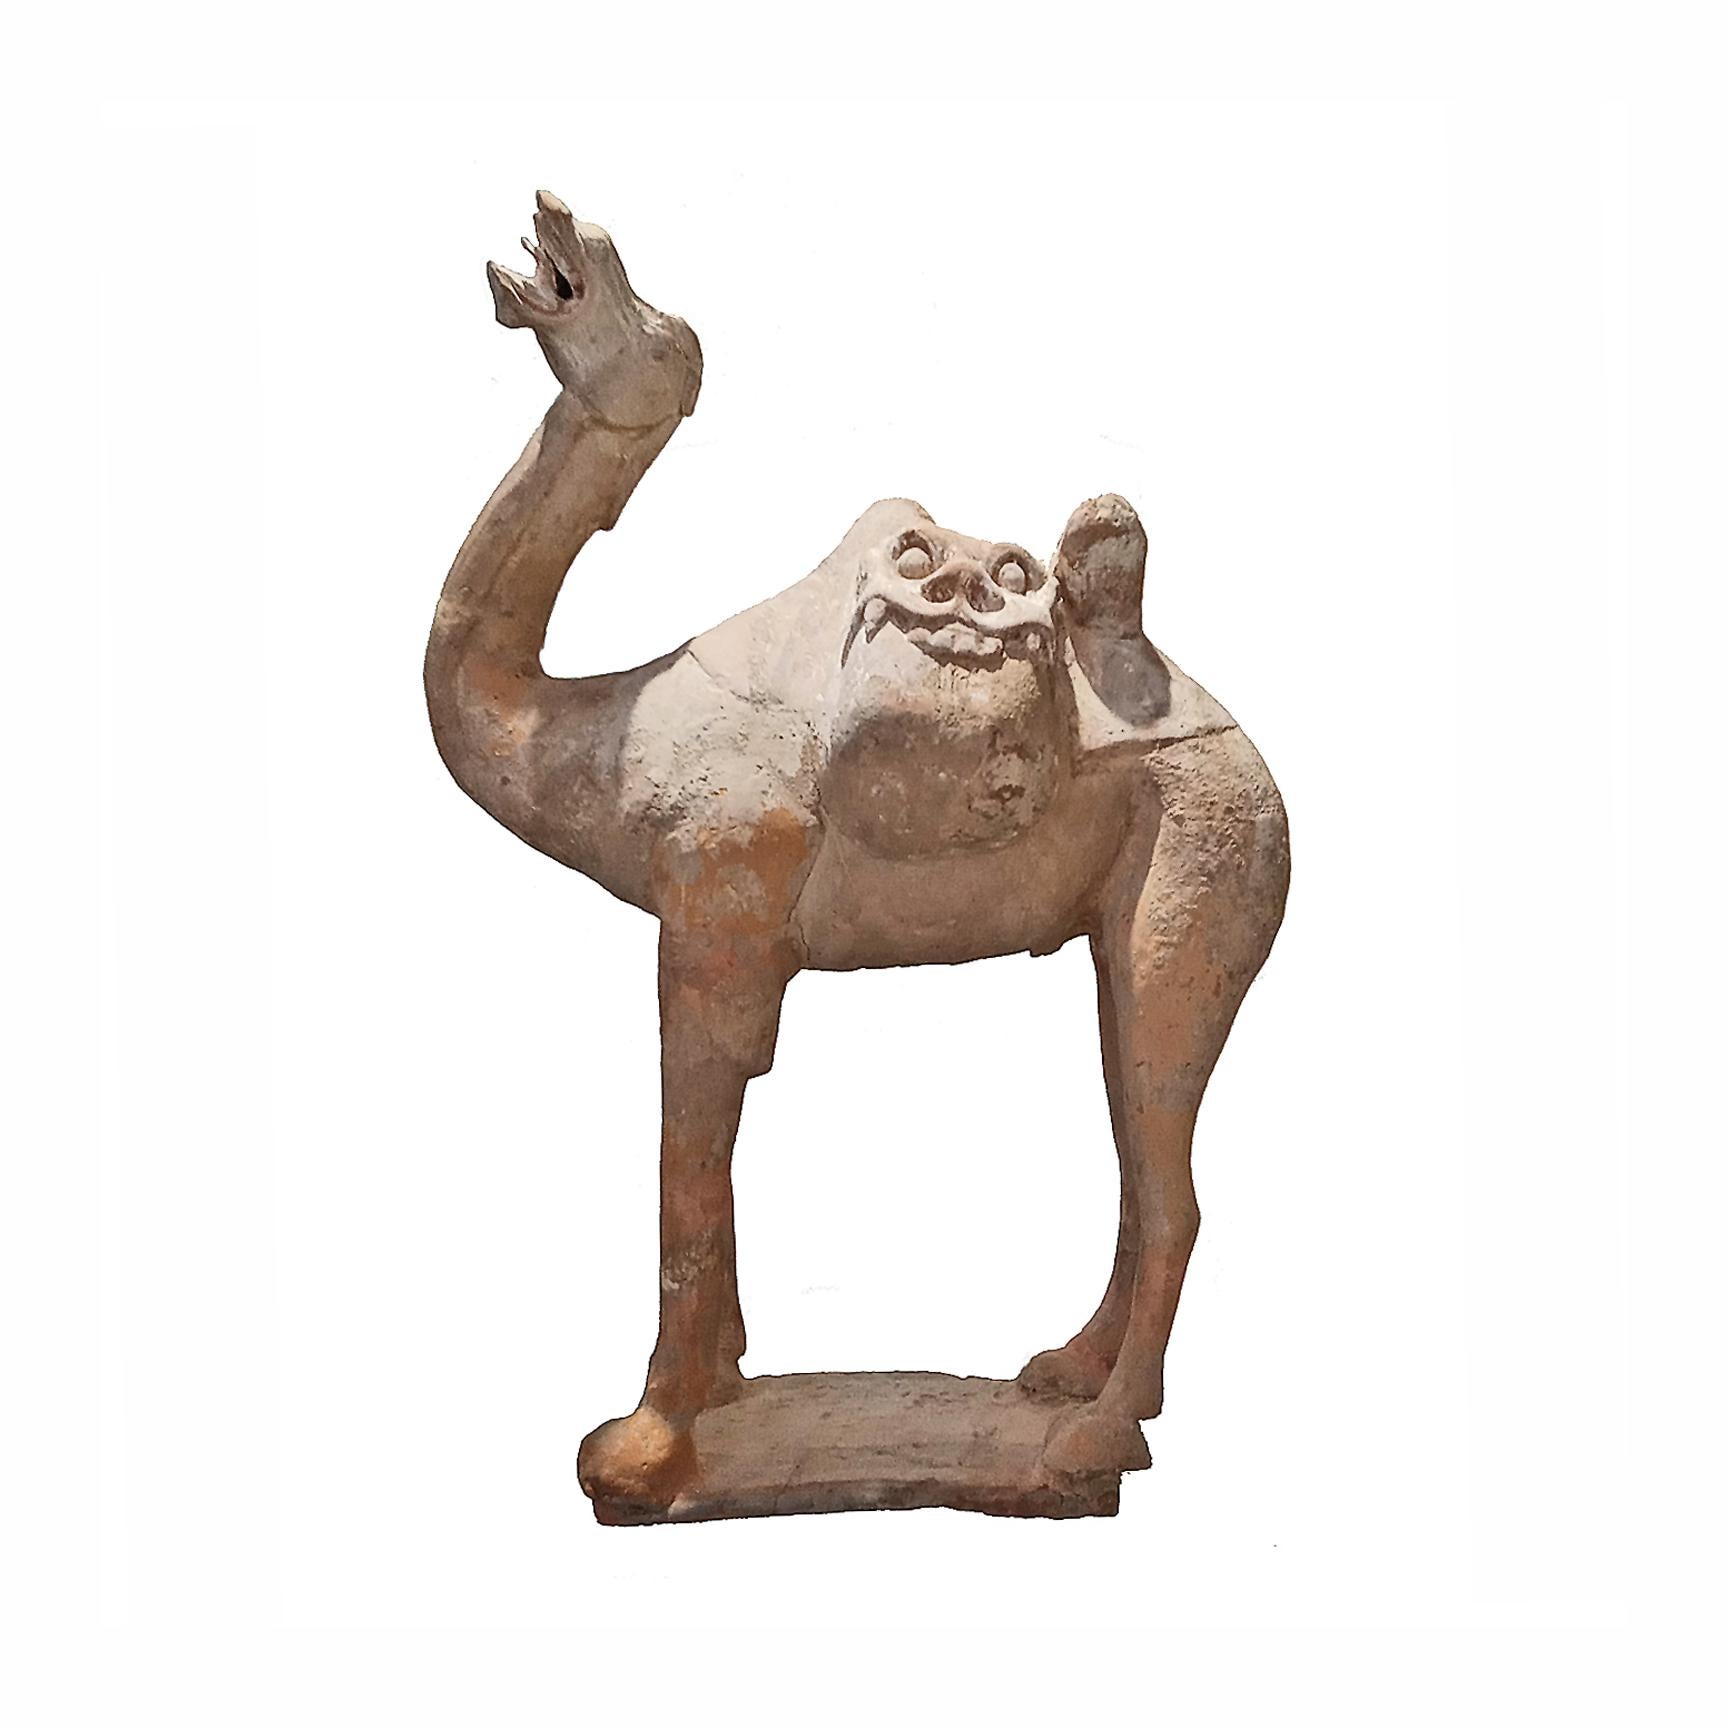 Un chameau chinois en terre cuite de la dynastie Tang.

Pour les habitants de la dynastie chinoise des Tang (618-907), très peu d'animaux étaient aussi...  utile et vénéré comme le cheval et le chameau. Le chameau de Bactriane était utilisé pour